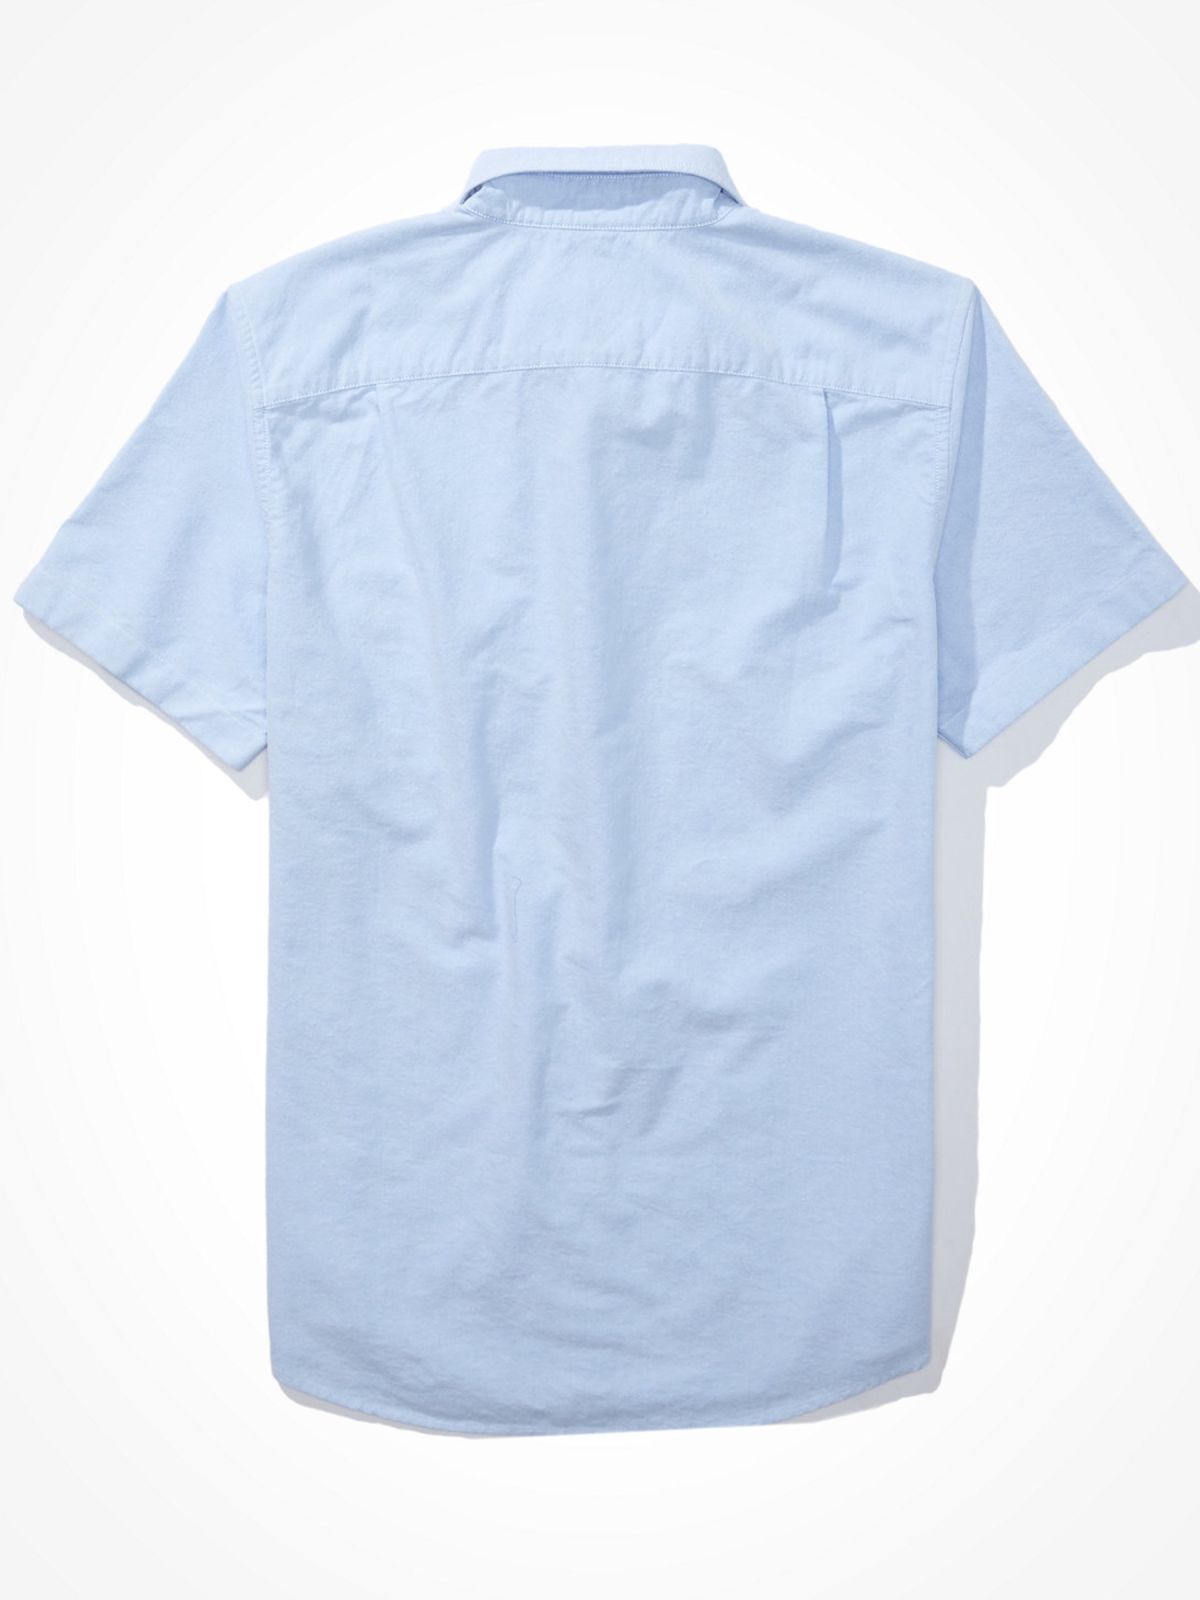  חולצה מכופתרת עם הדפס לוגו / גברים של AMERICAN EAGLE